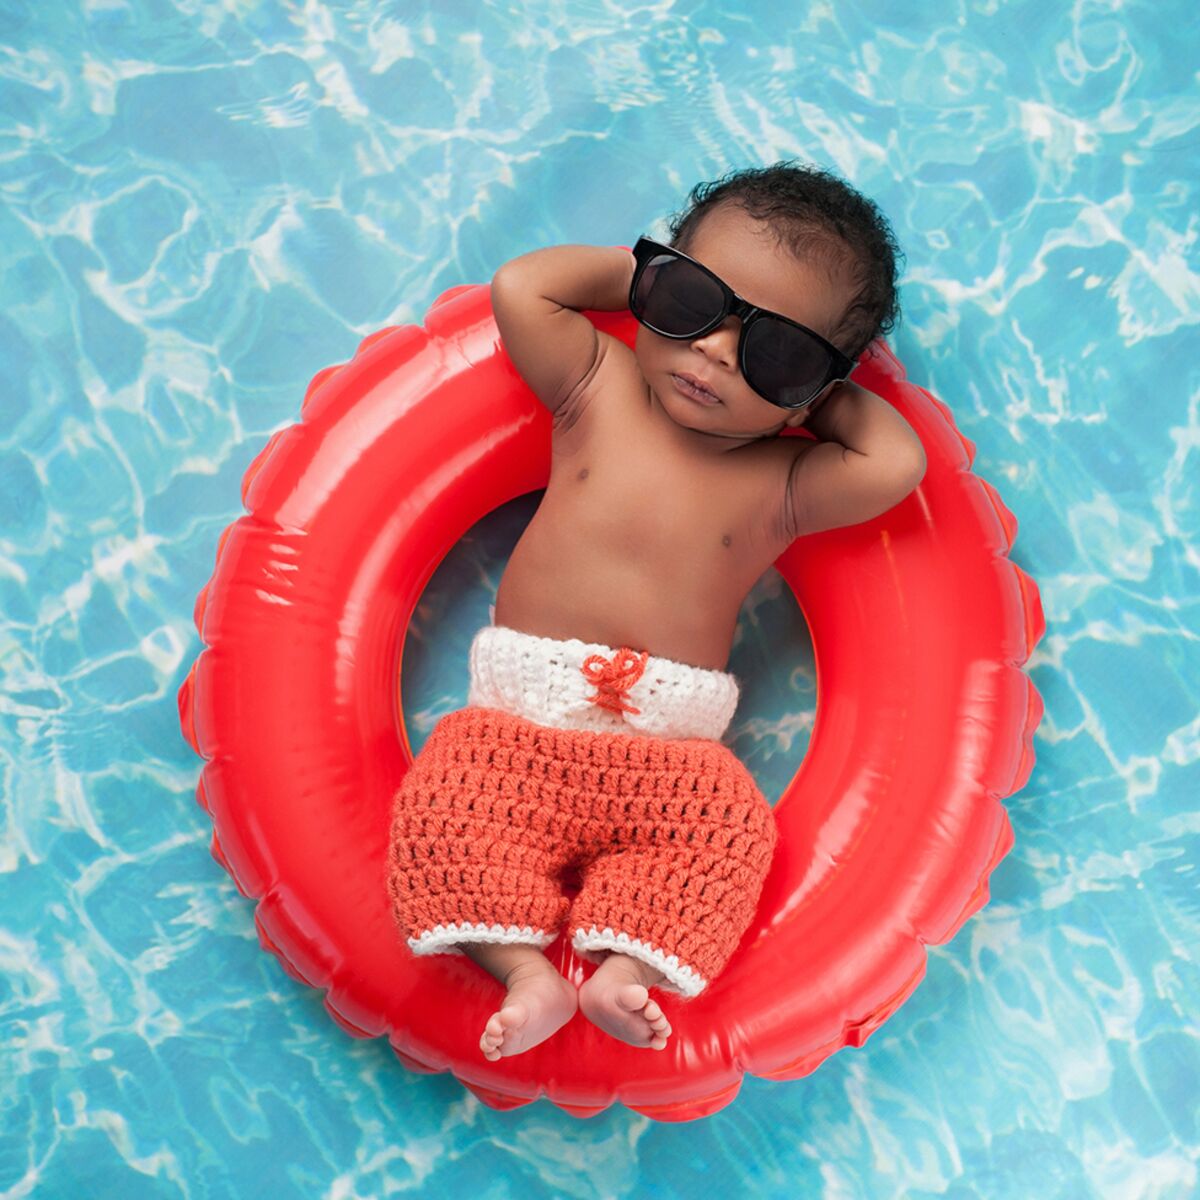 Quelle bouée choisir pour une bébé à la piscine ? - Le Parisien